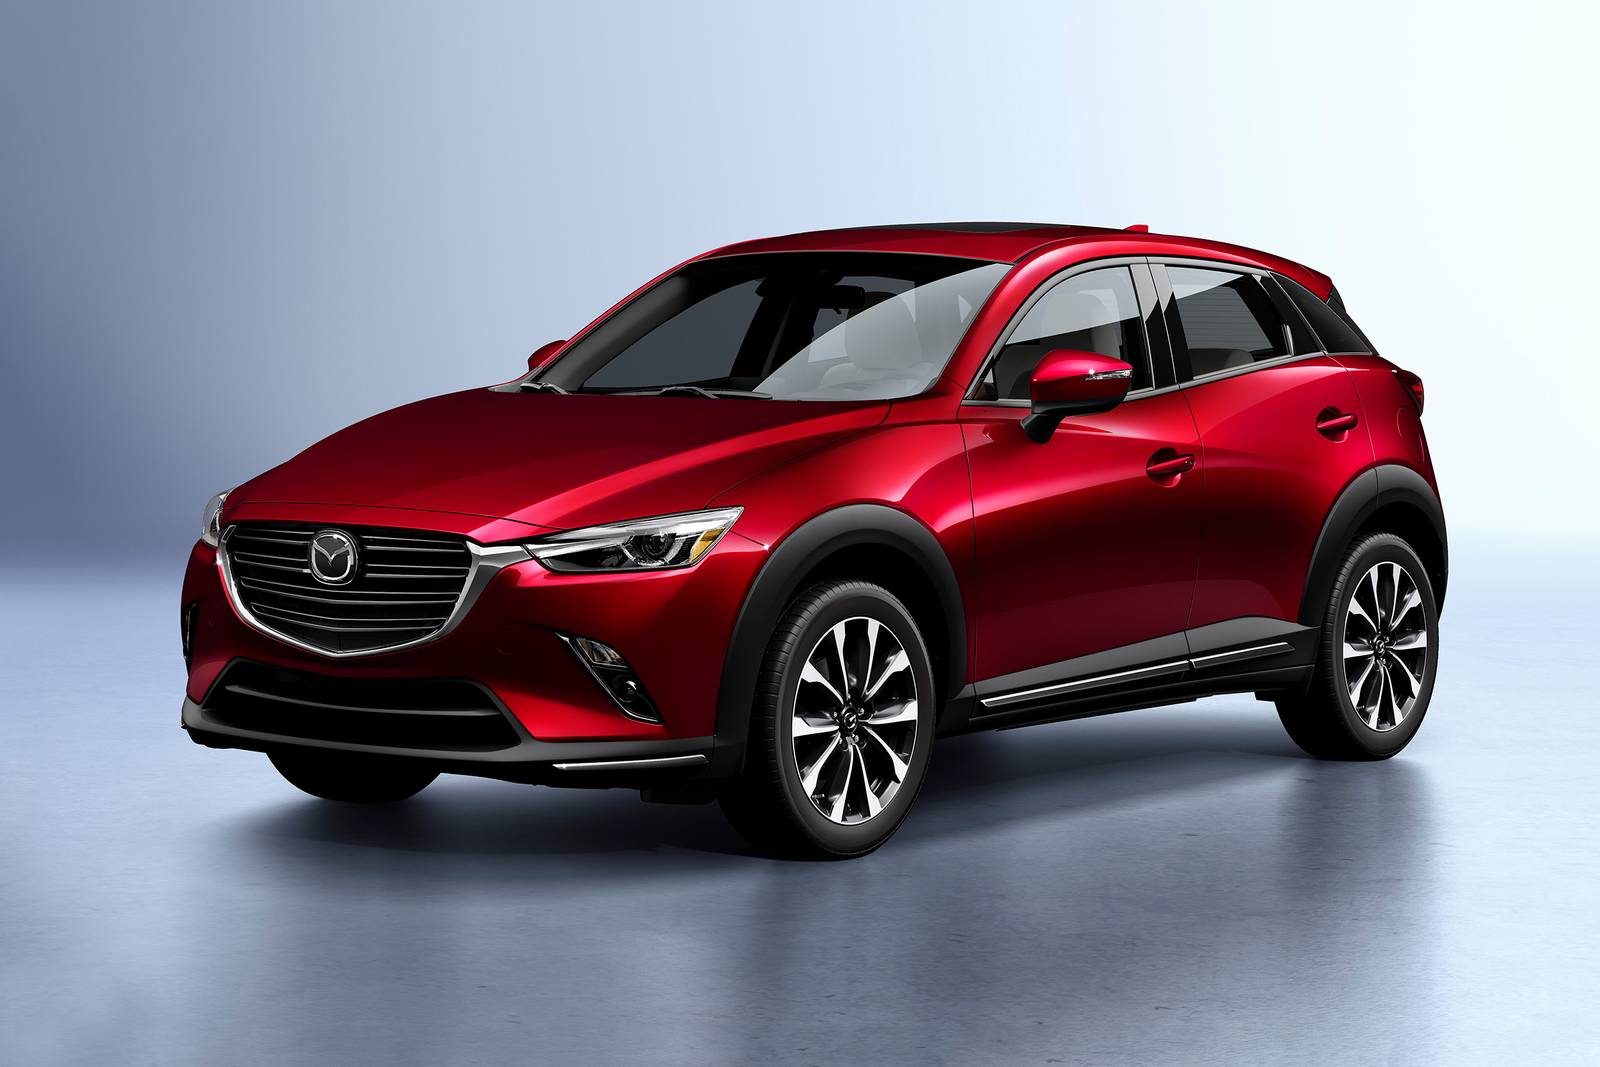 2019 Mazda CX-3 Review & Ratings